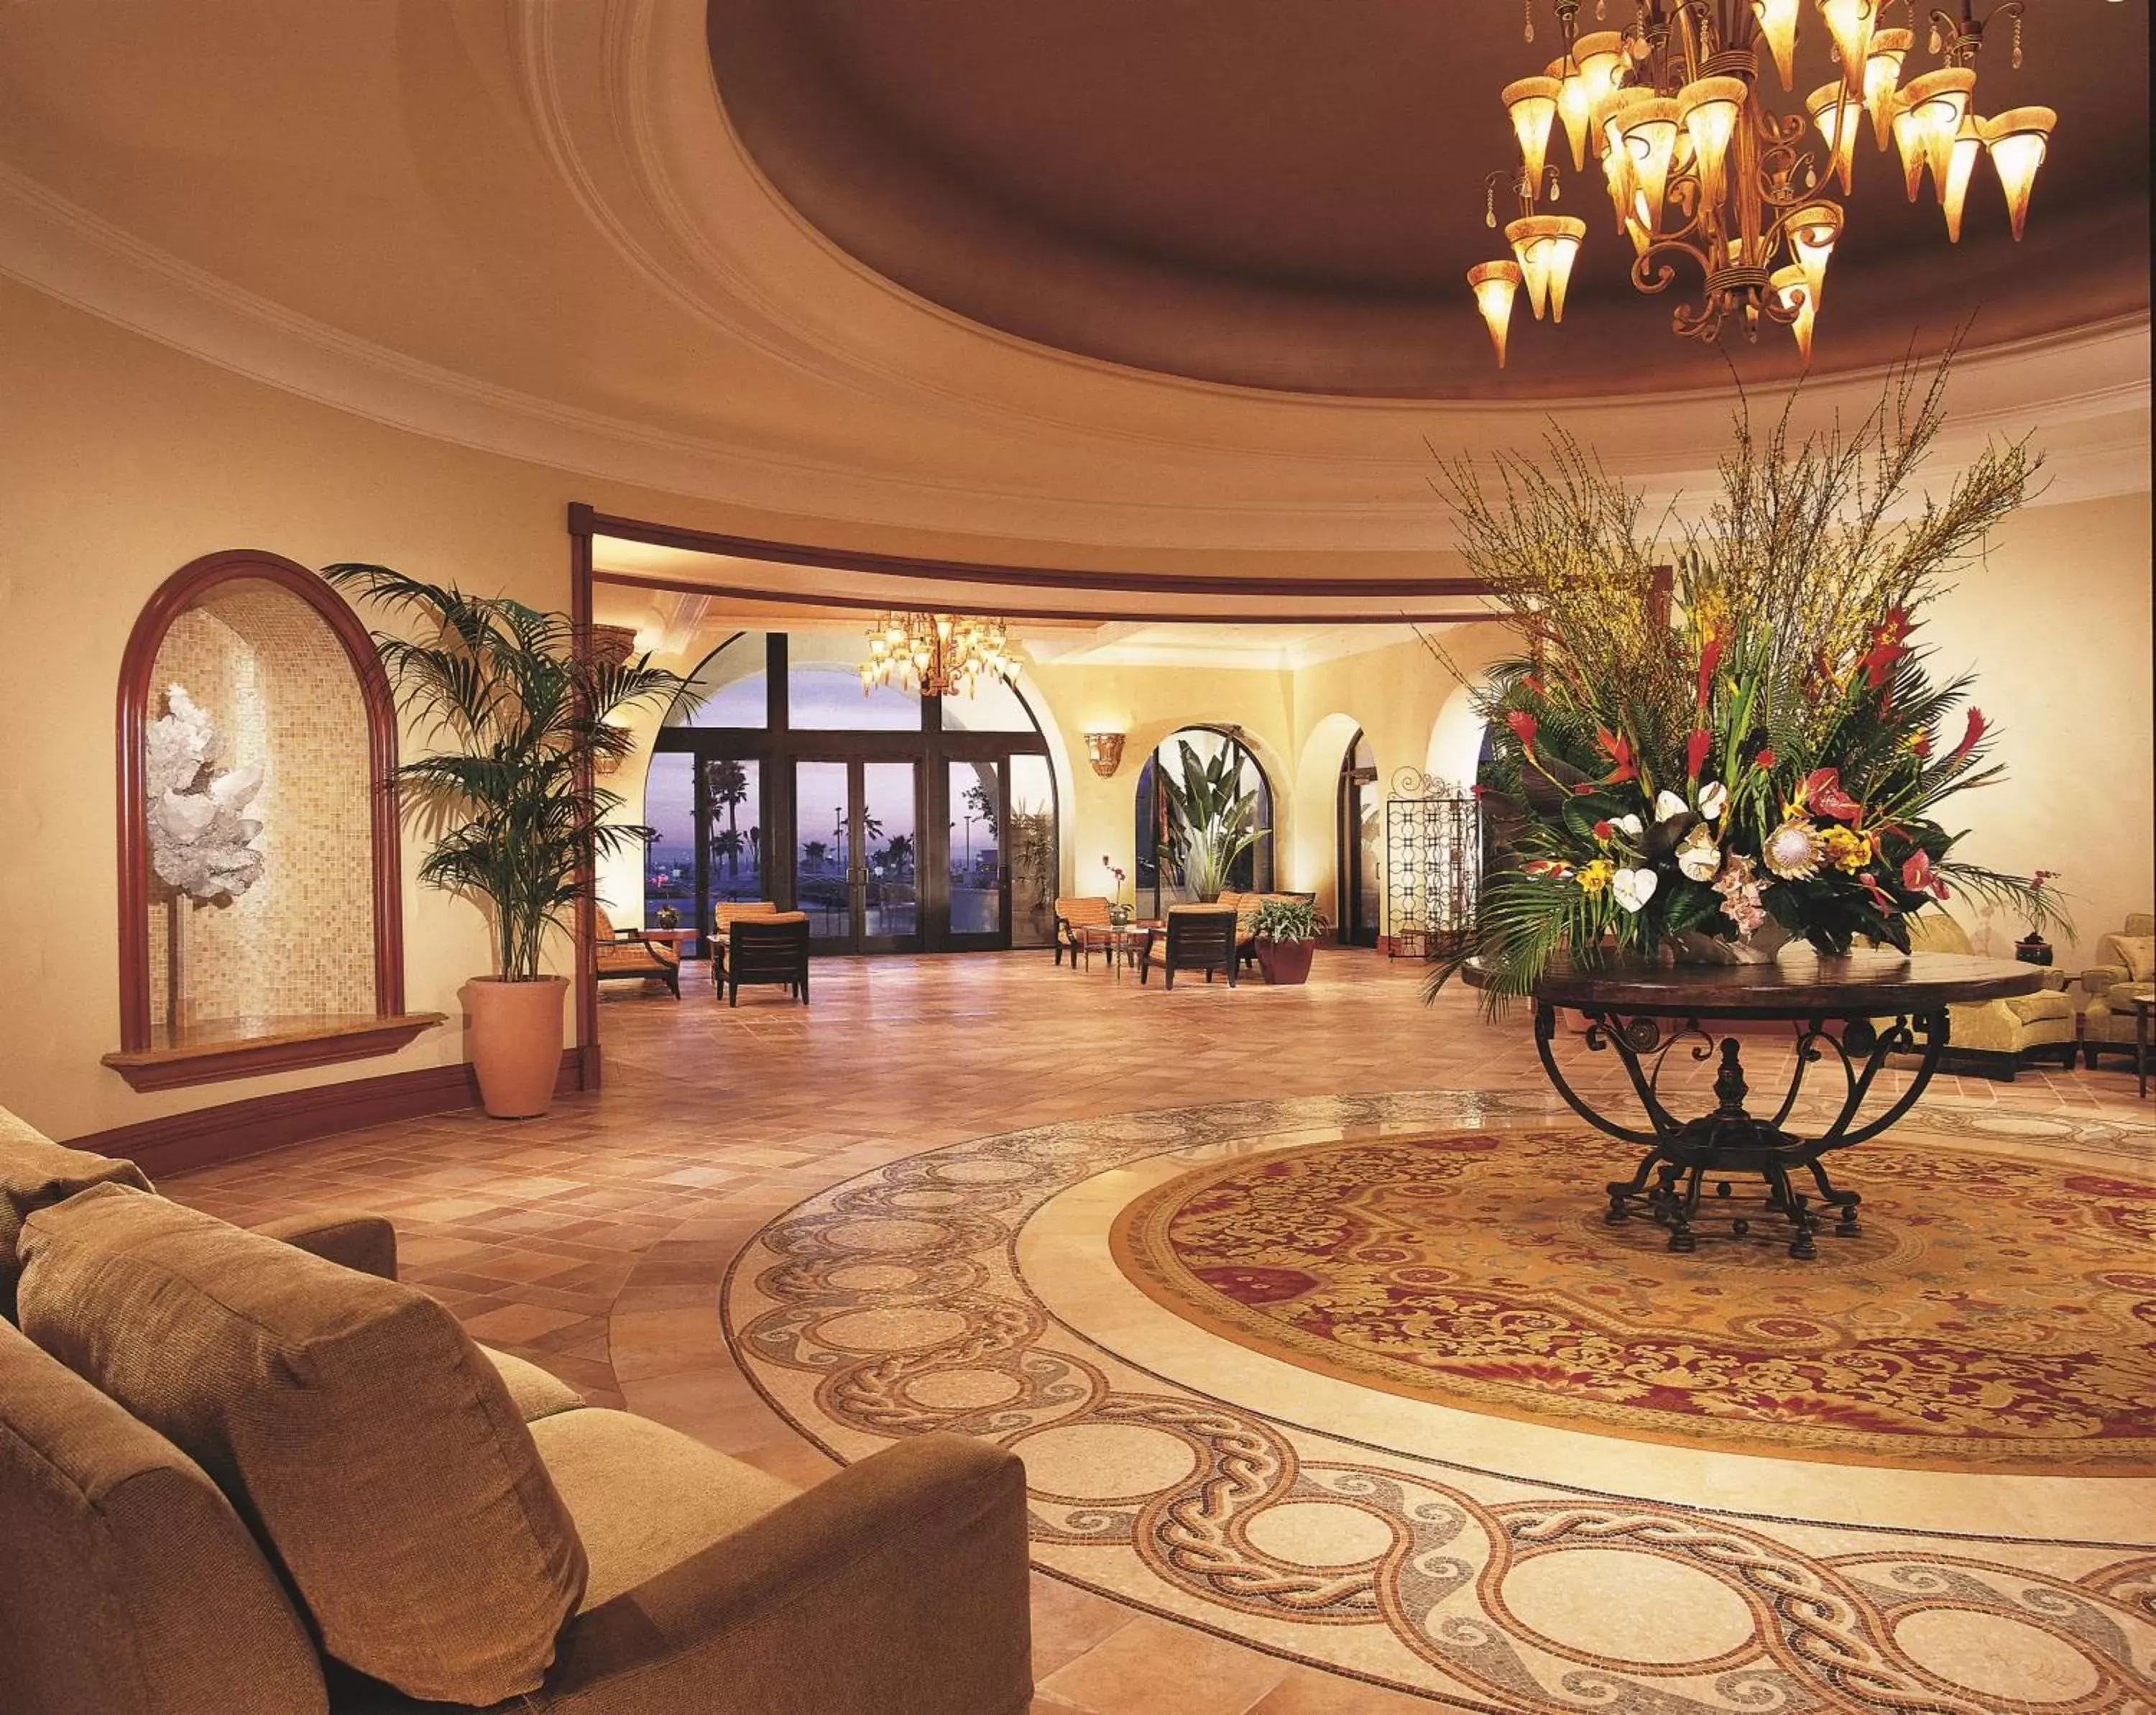 Lobby or reception in Hyatt Regency Huntington Beach Resort and Spa